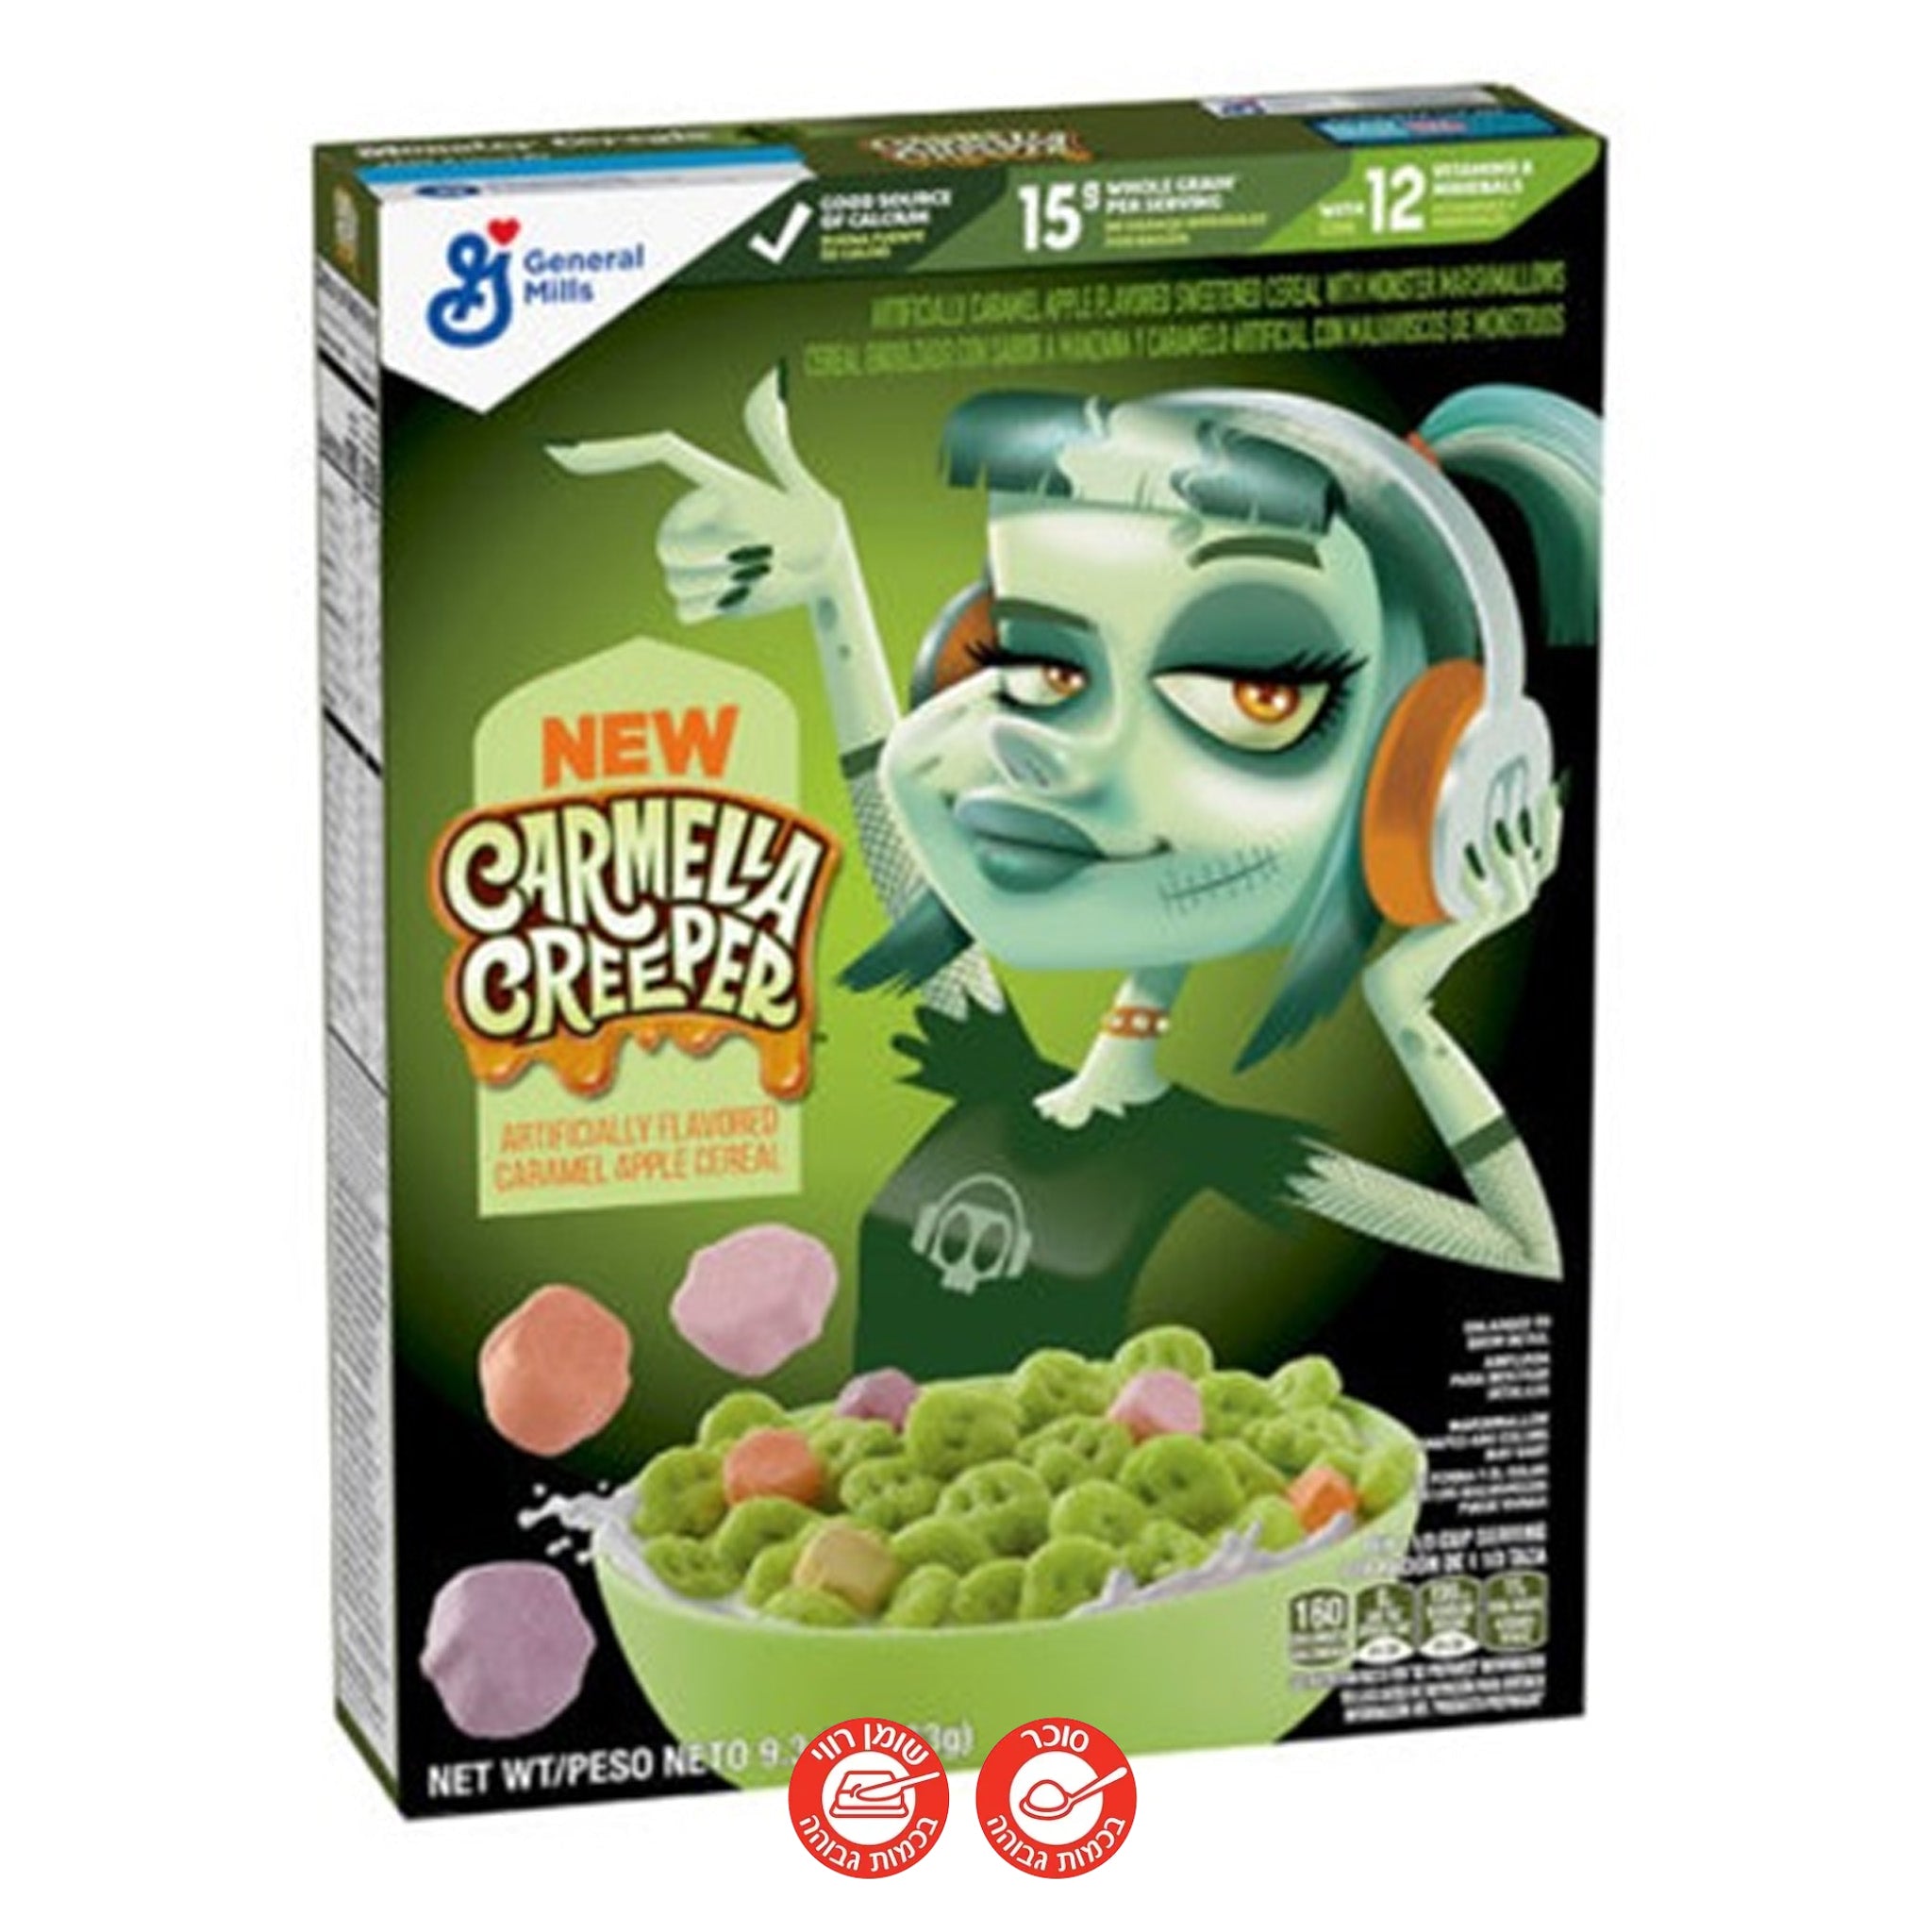 Carmella Creeper Cereal דגני בוקר הלווין כרמלה קריפר